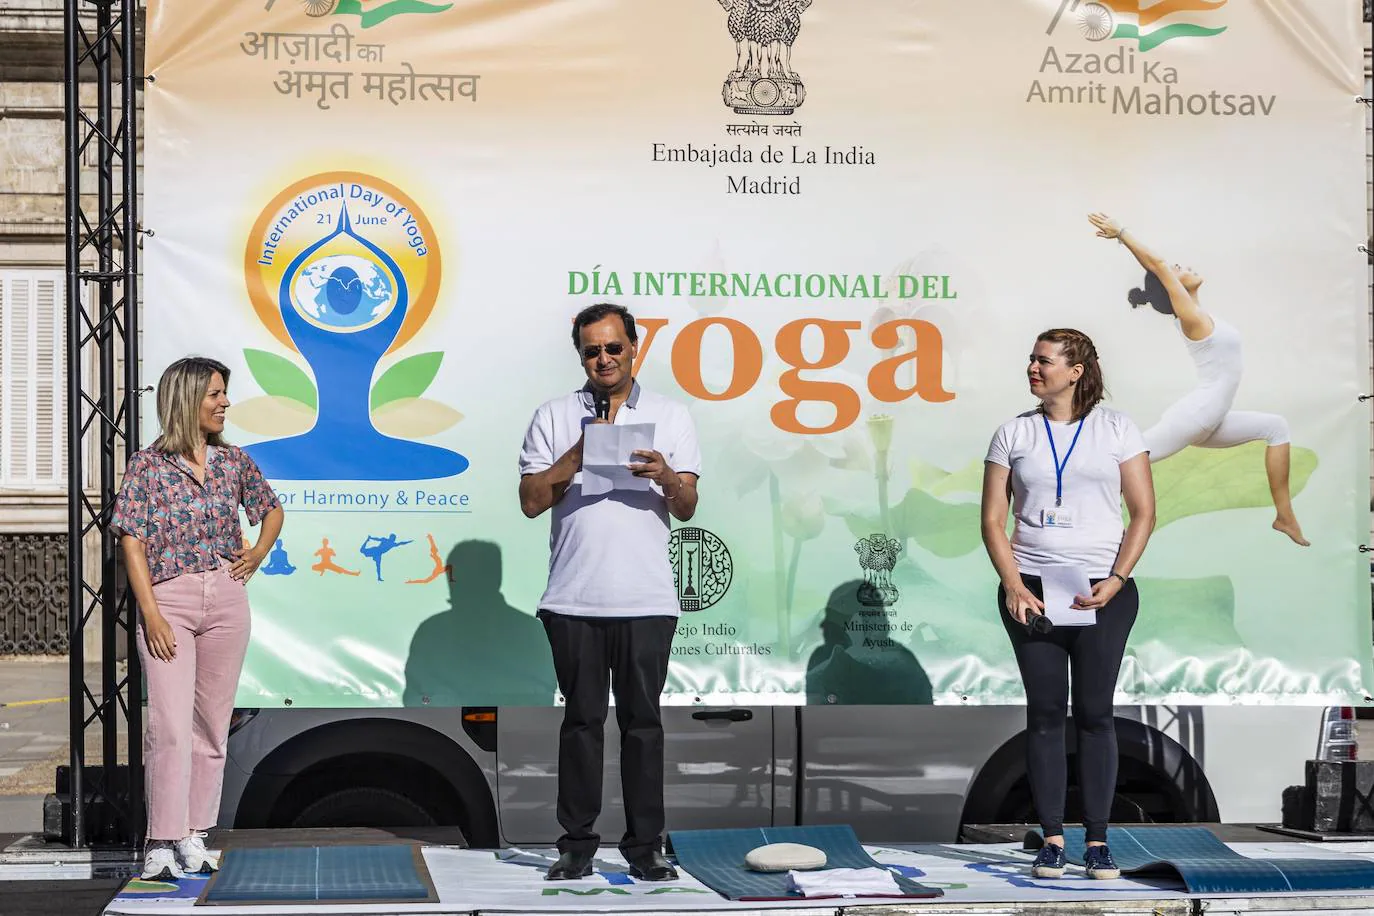 Bienvenida al embajador. El evento ha empezado a las 9 horas, con la bienvenida del embajador indio, Dinesh K. Patnaik, que ha inaugurado la sesión de yoga de 45 minutos. Al terminar, ha atendido a los medios de comunicación.